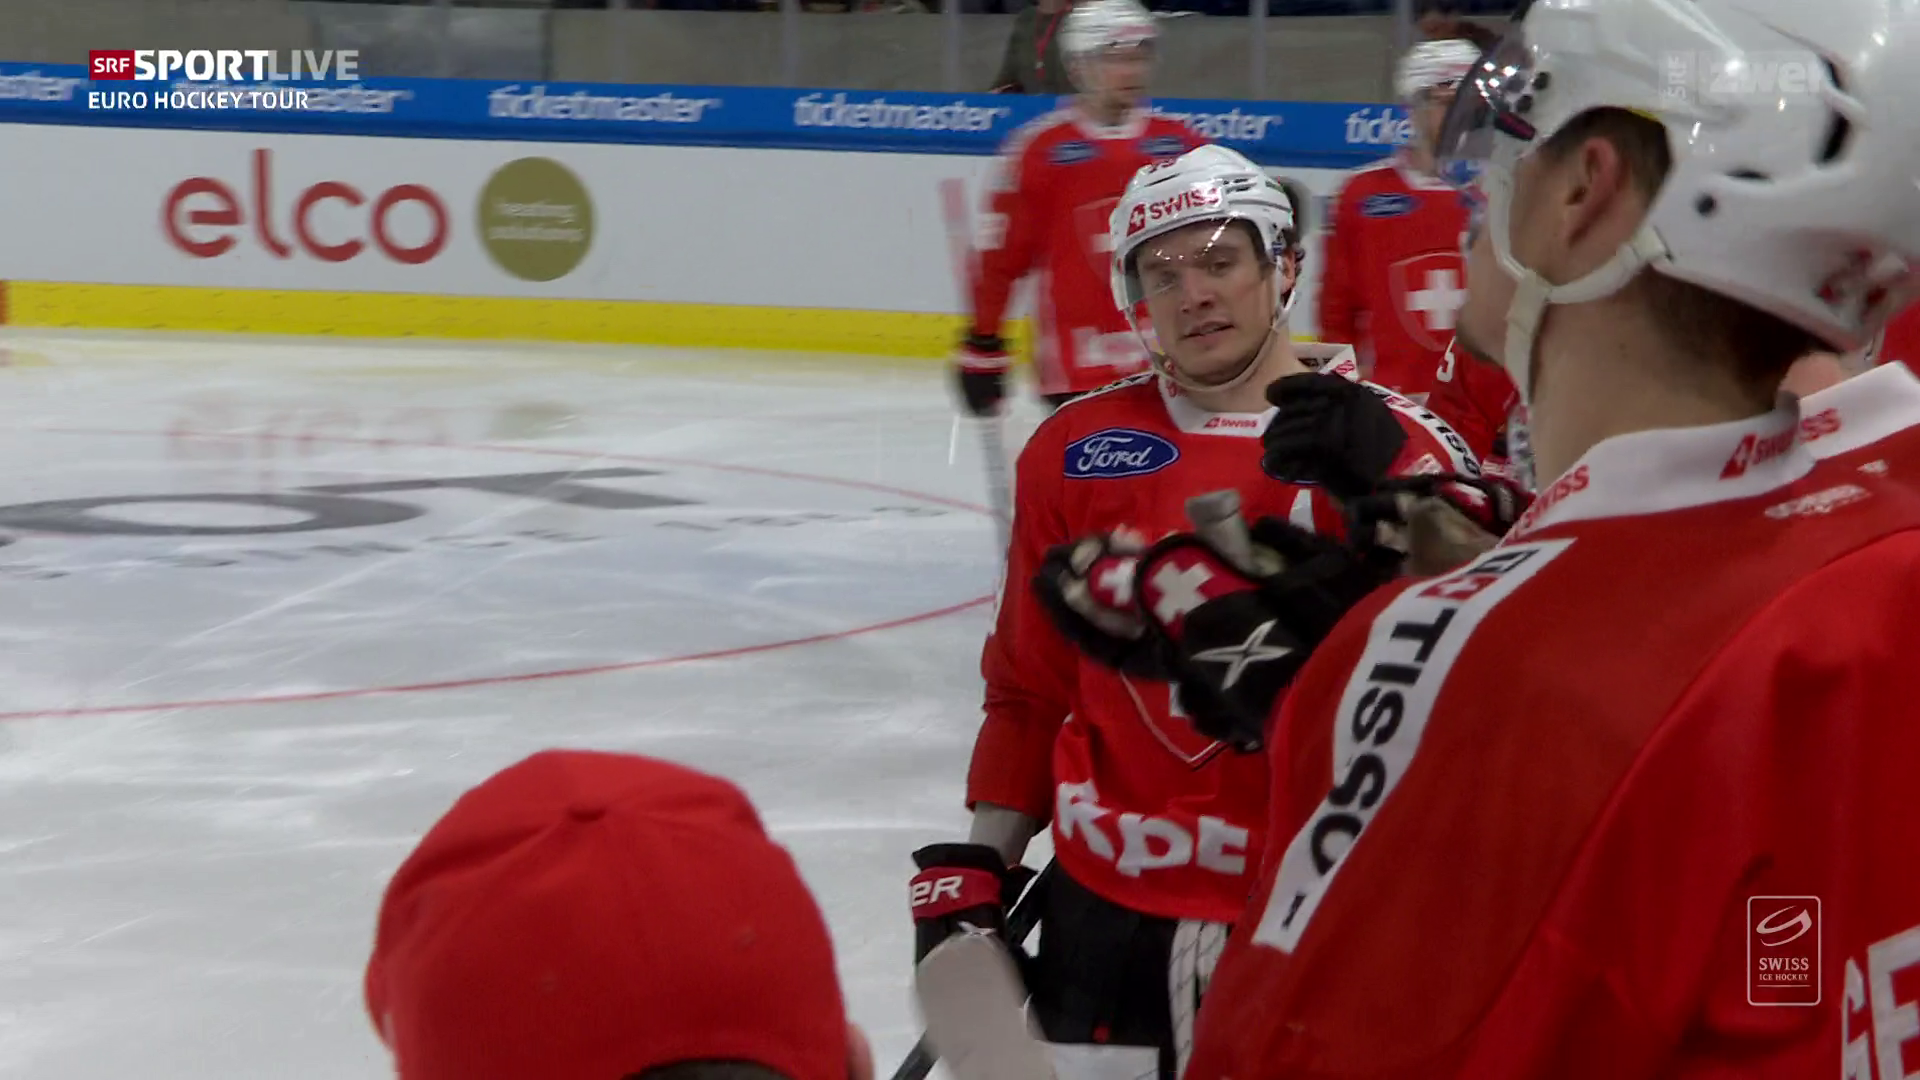 Auftakt der Euro Hockey Tour - Junges Schweizer Team unterliegt Finnland im Penaltyschiessen - Sport